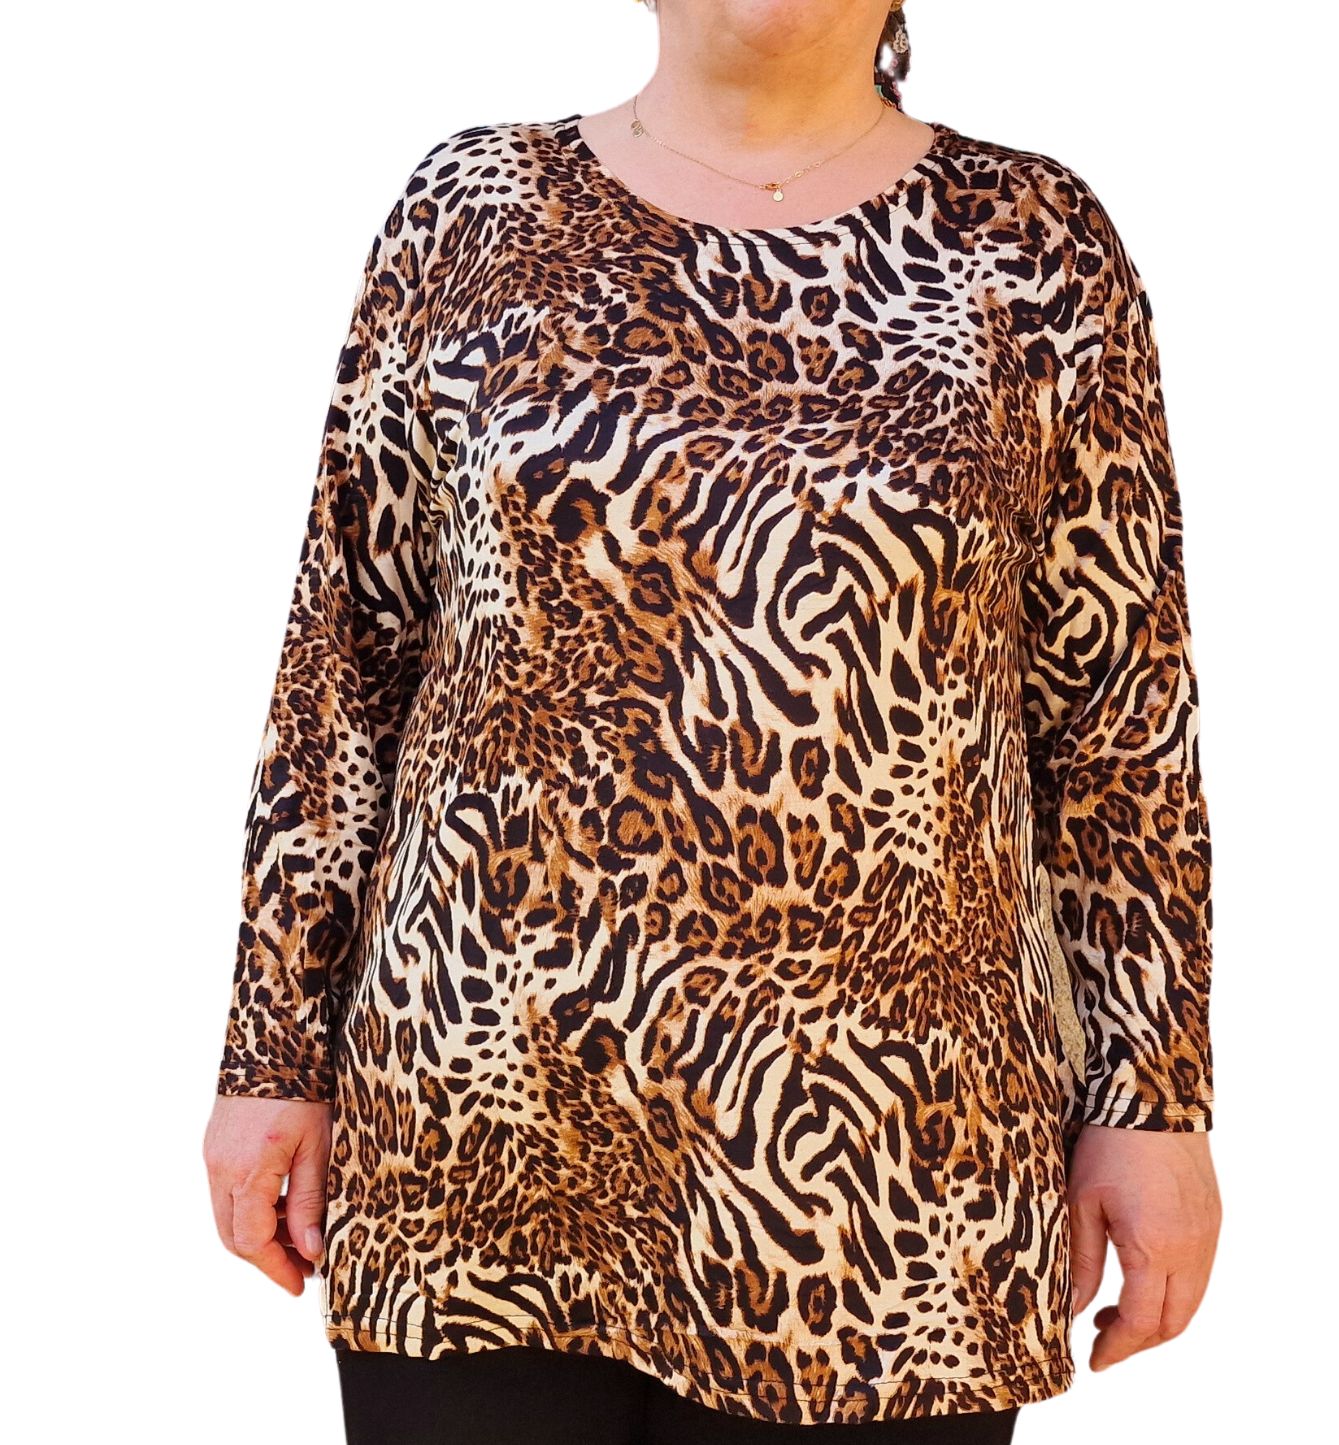 Bluza femei marime mare Leopard